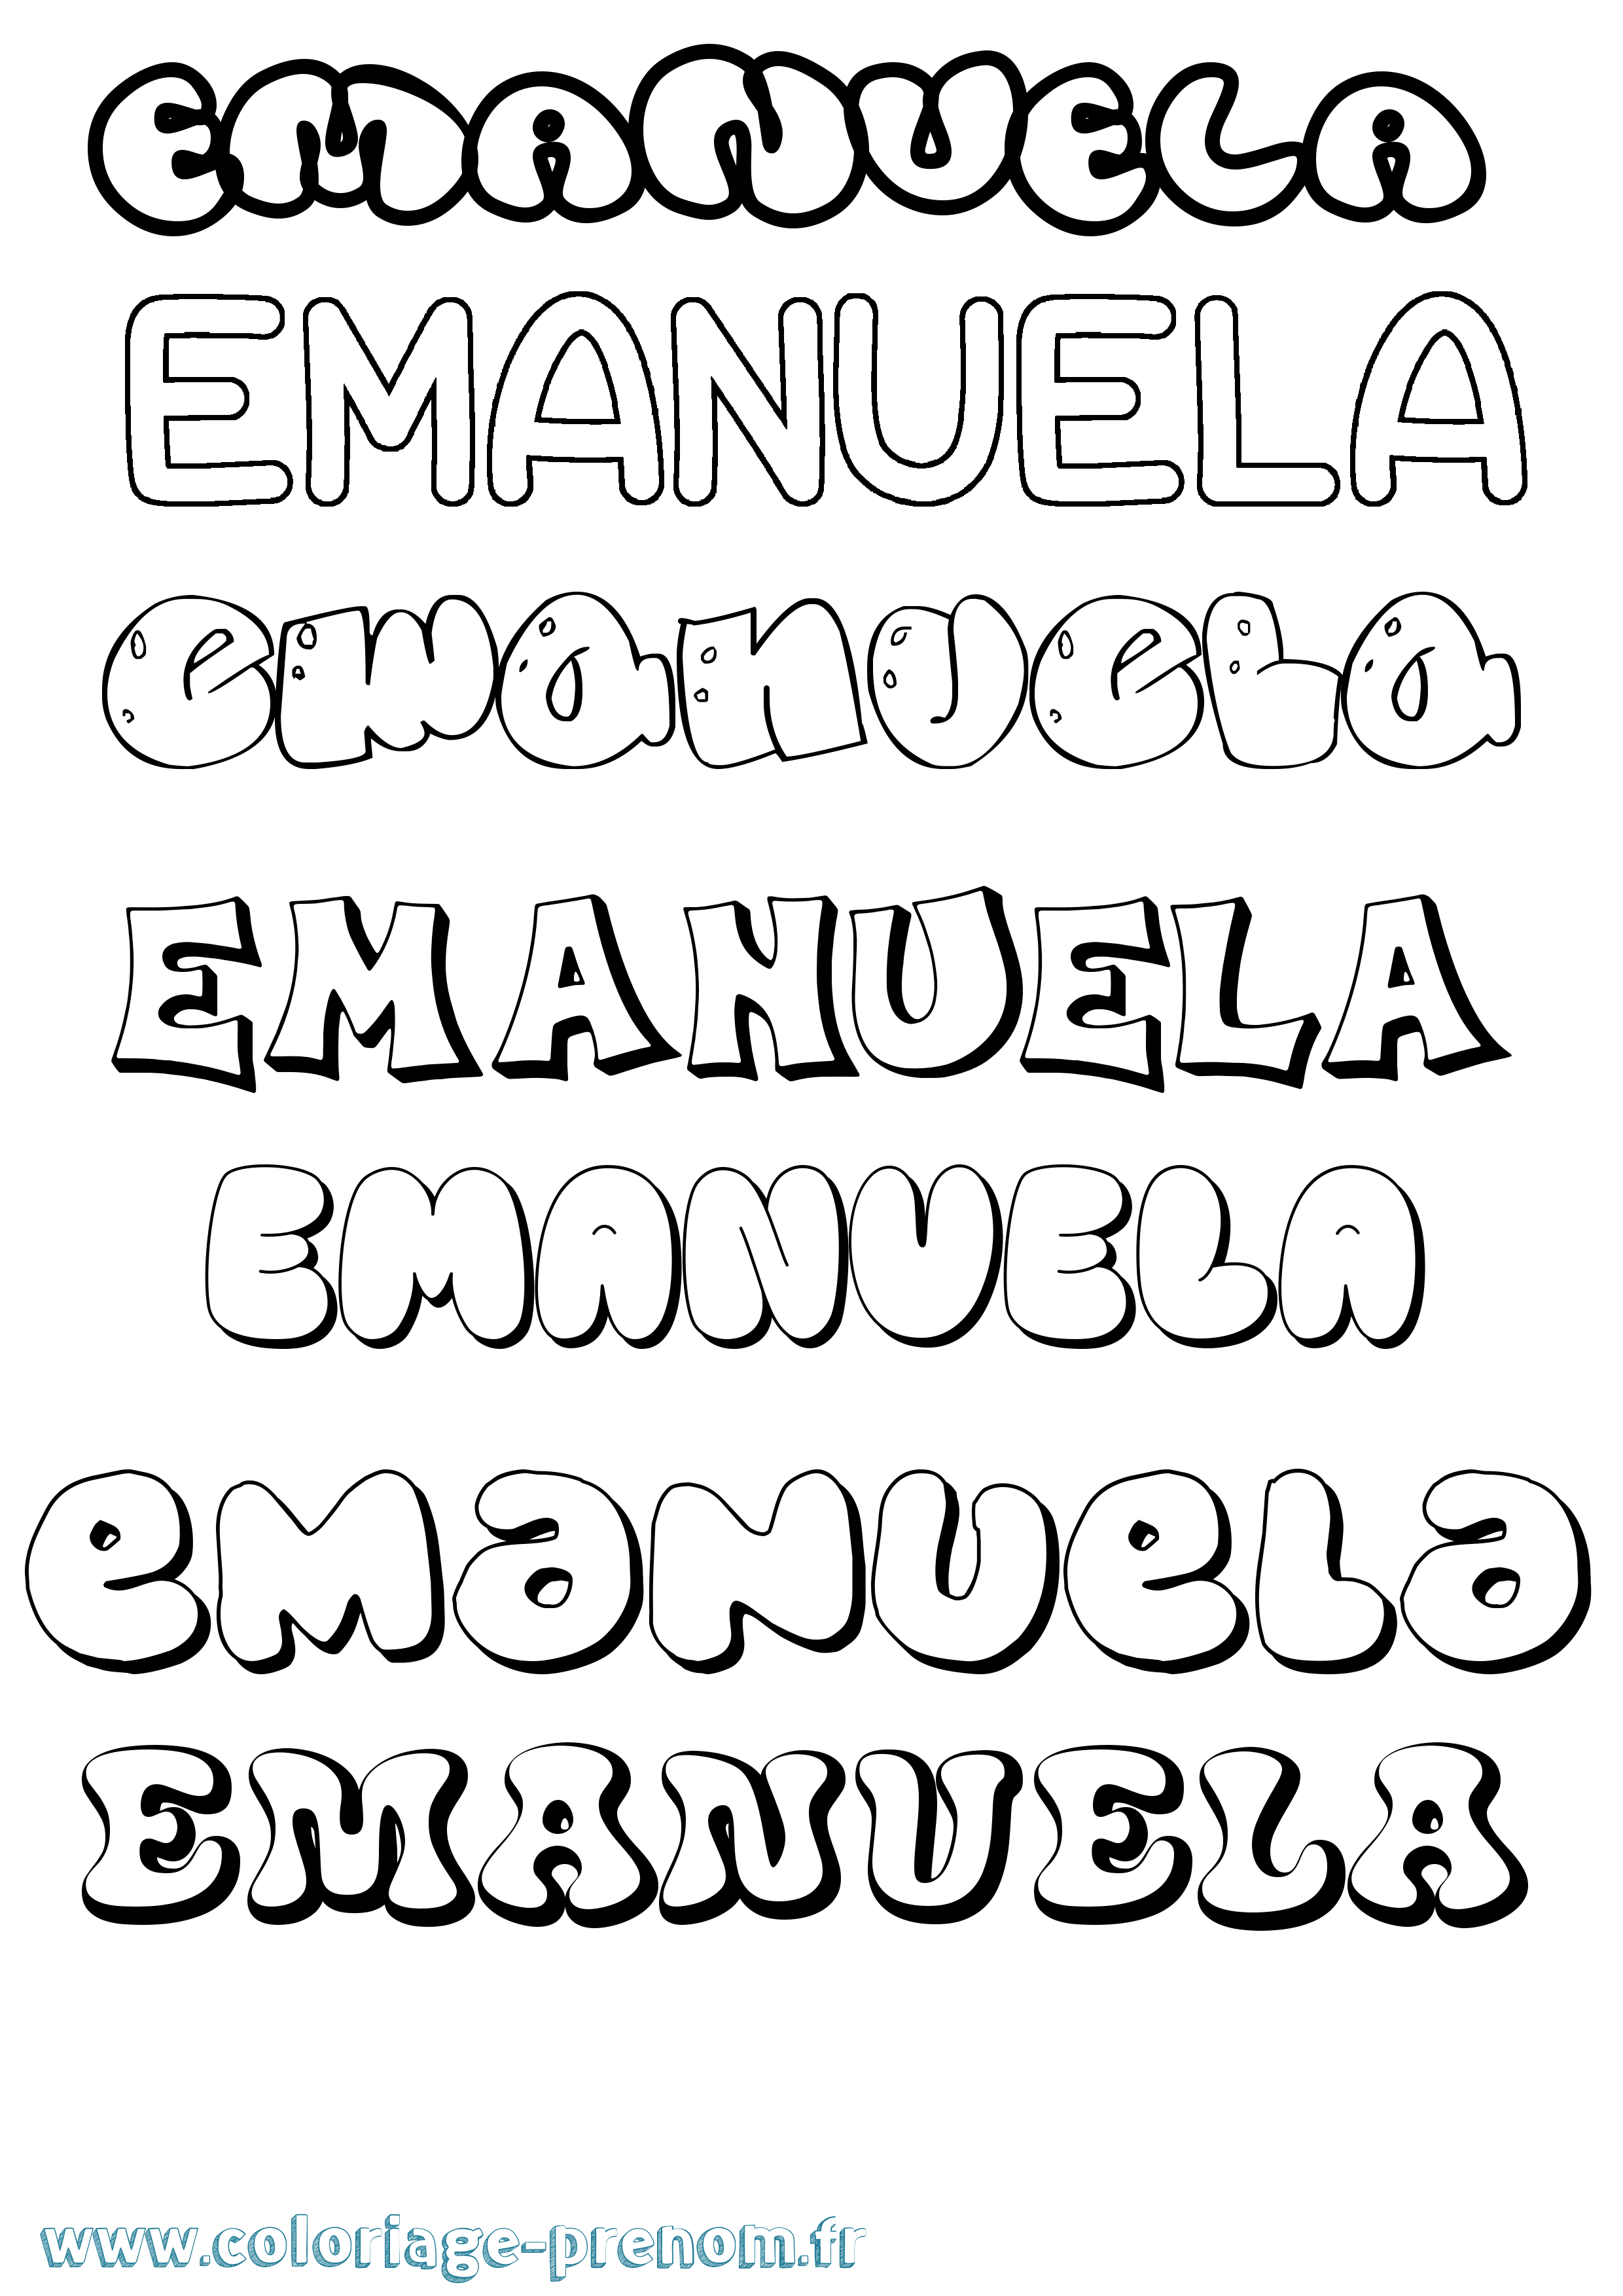 Coloriage prénom Emanuela Bubble